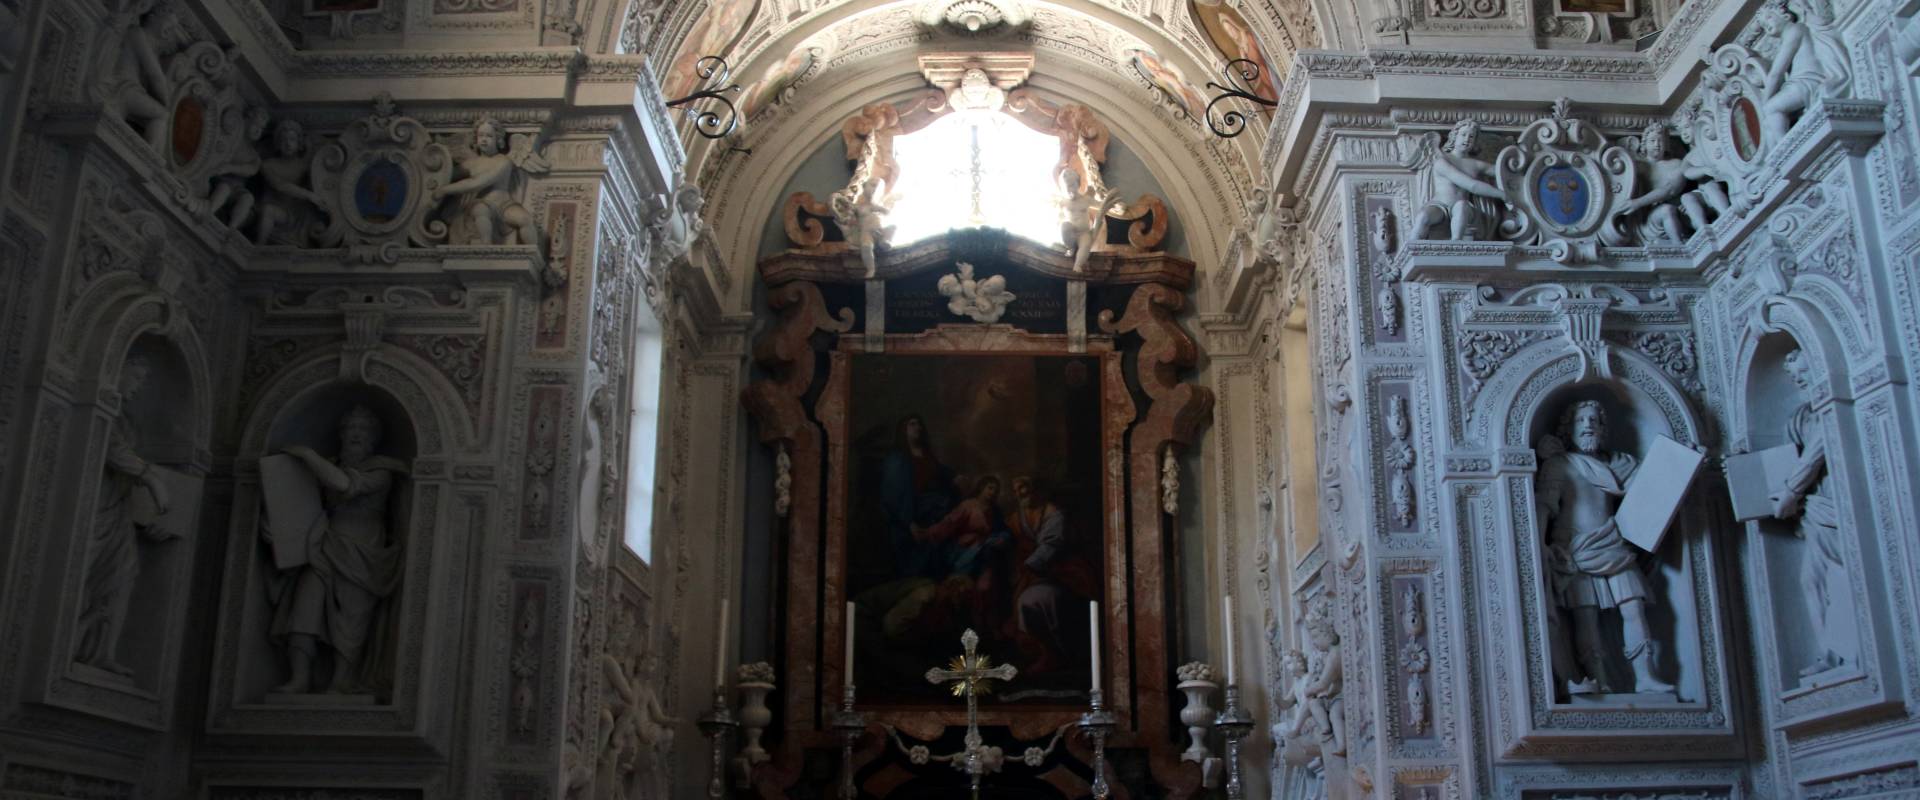 Collegiata di Santa Maria Assunta (Castell'Arquato), Cappella di San Giuseppe 04 photo by Mongolo1984